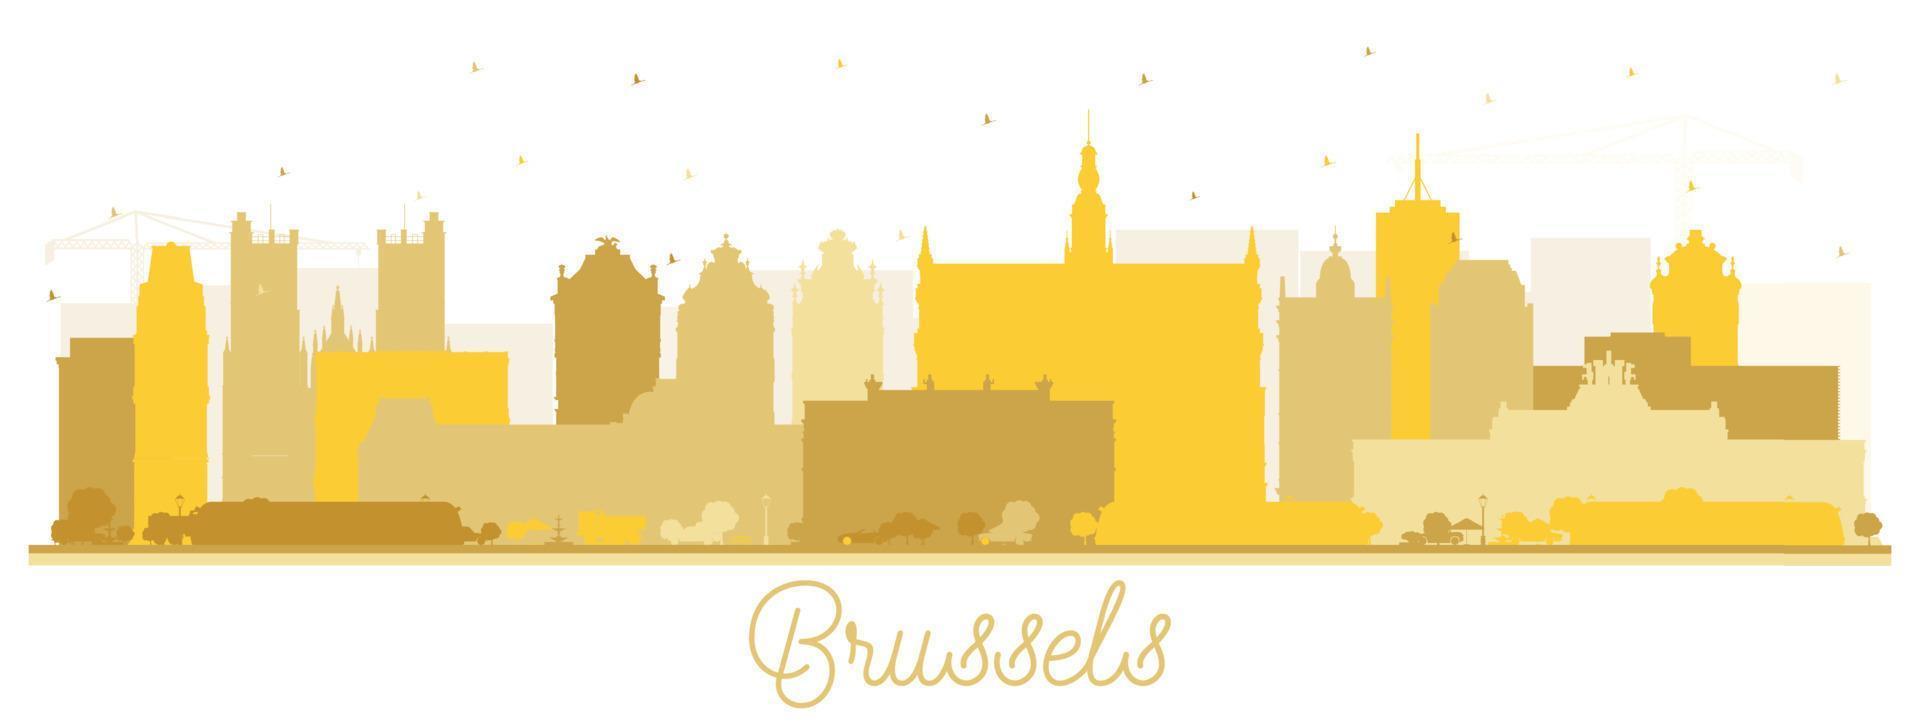 silueta del horizonte de la ciudad de bruselas bélgica con edificios dorados aislados en blanco. vector